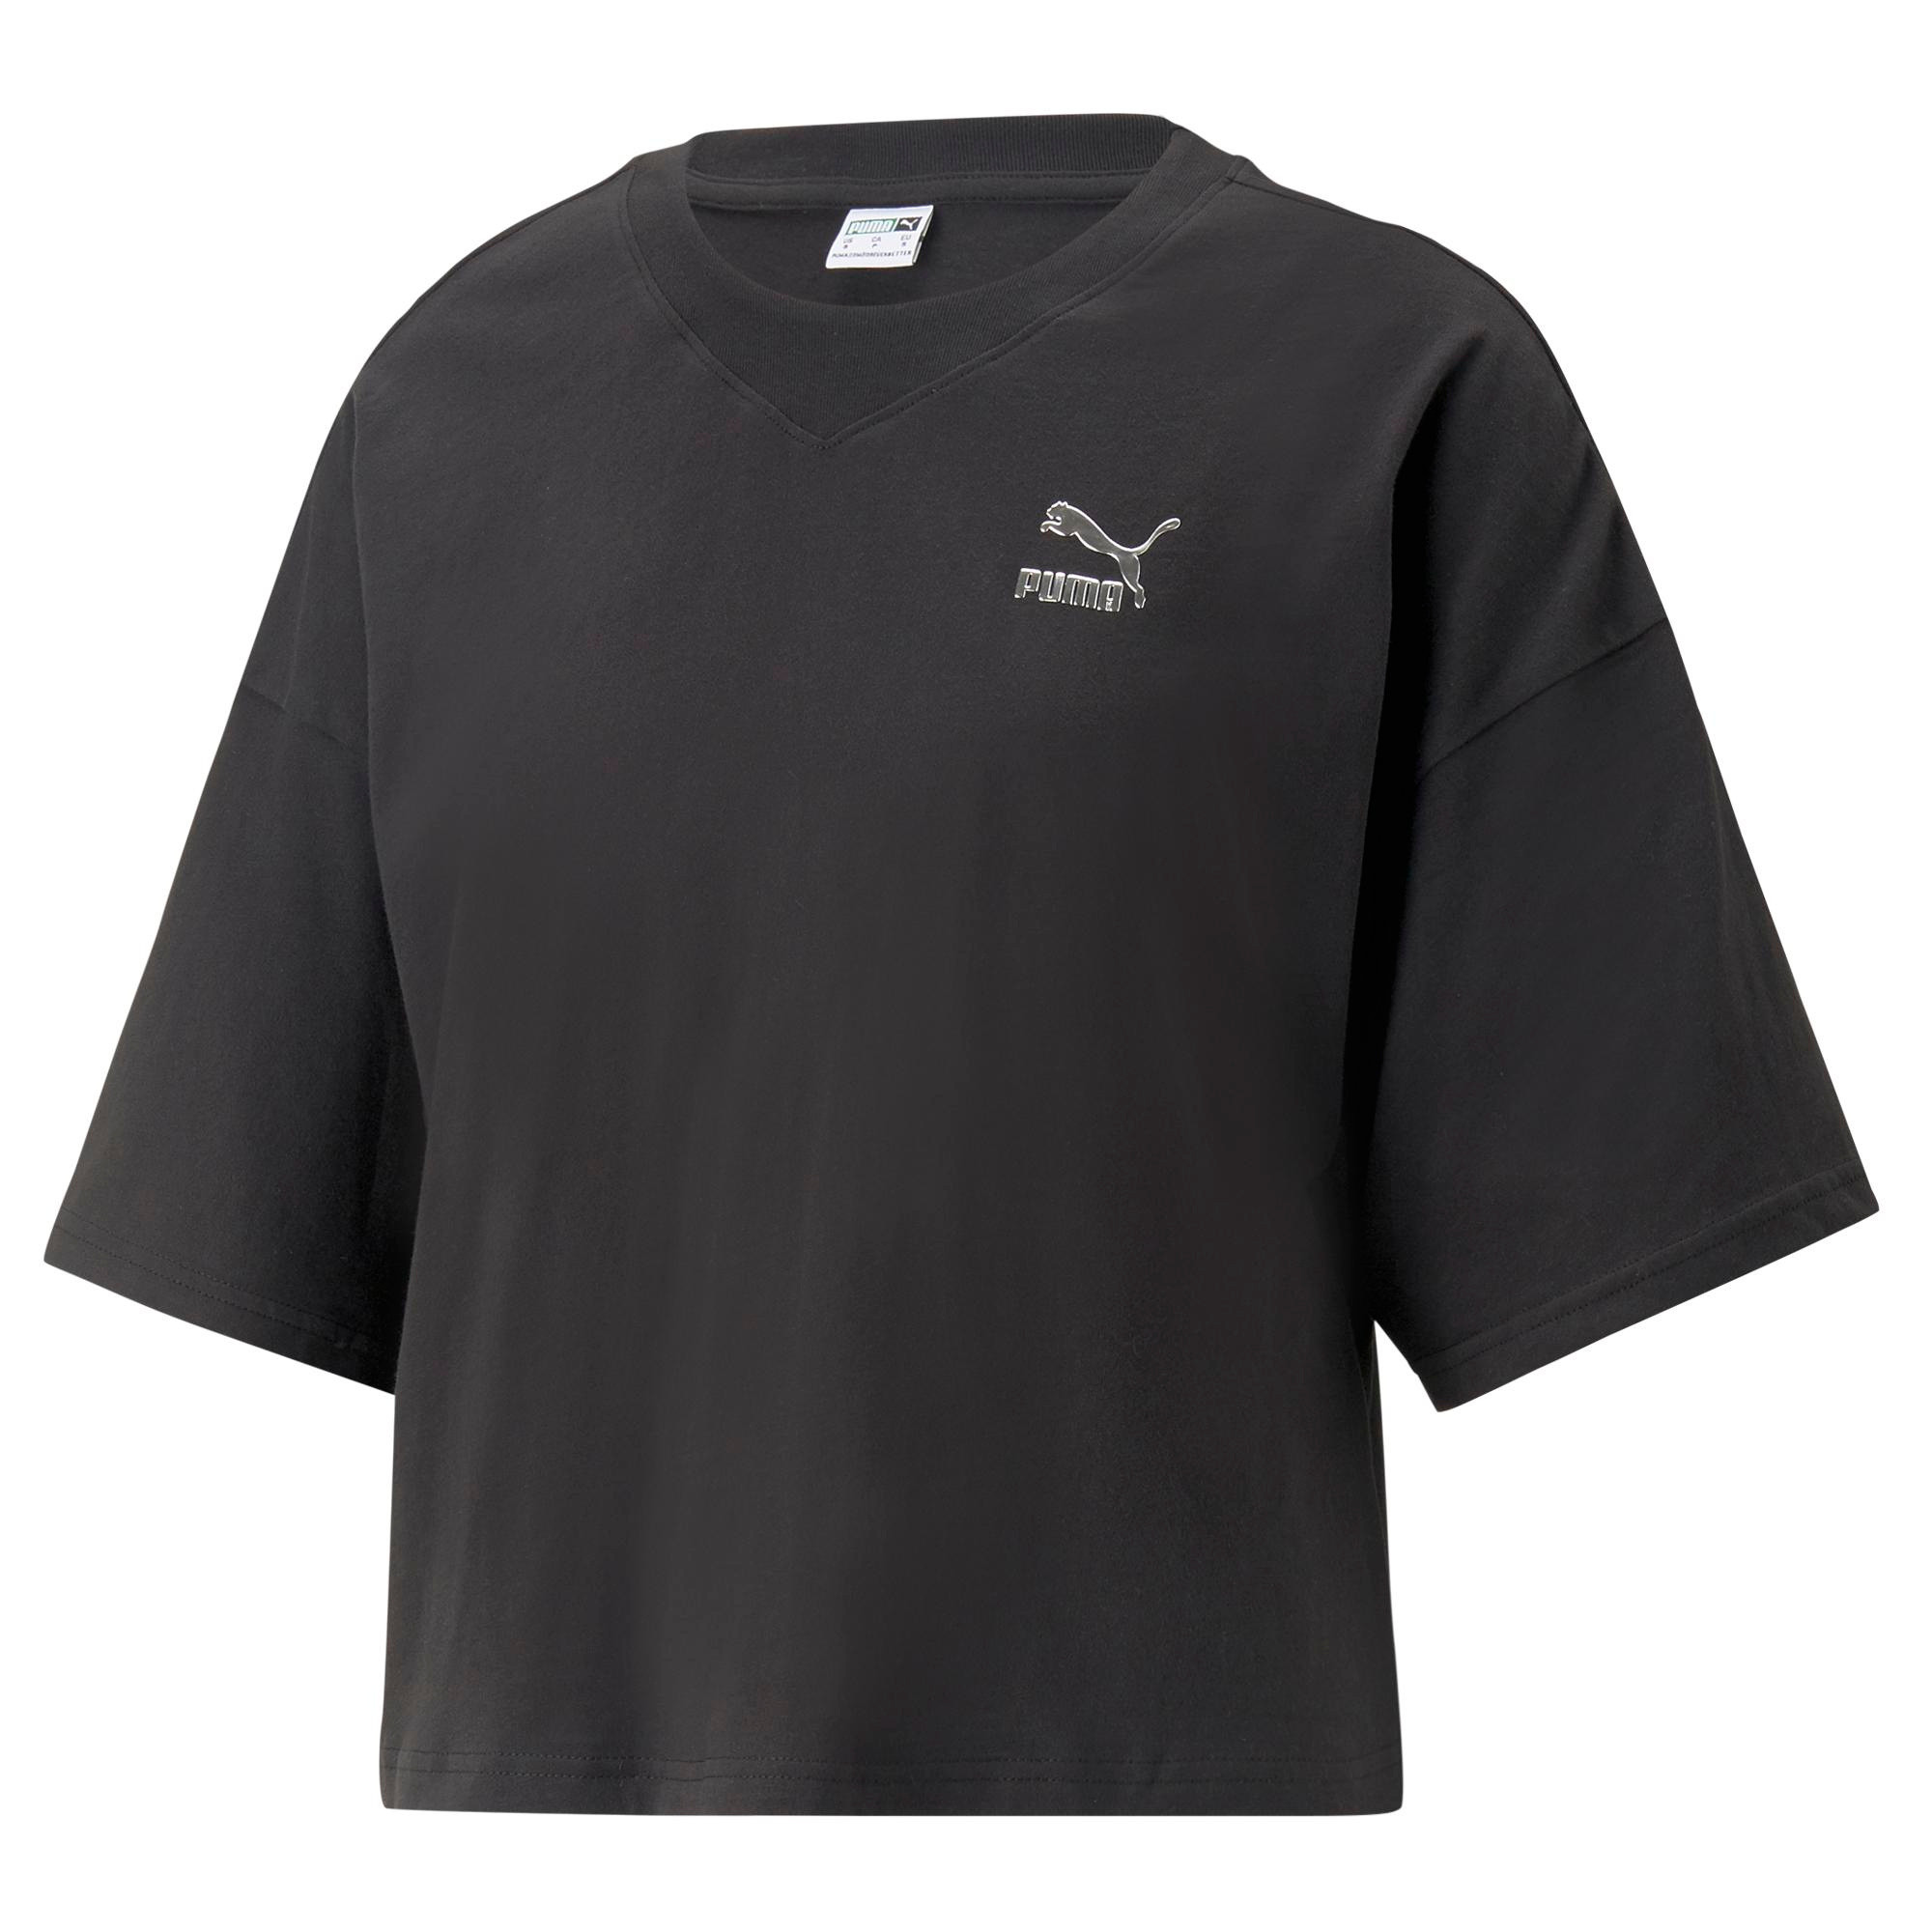 Puma - Oversized cotton T-shirt, Black, large image number 0